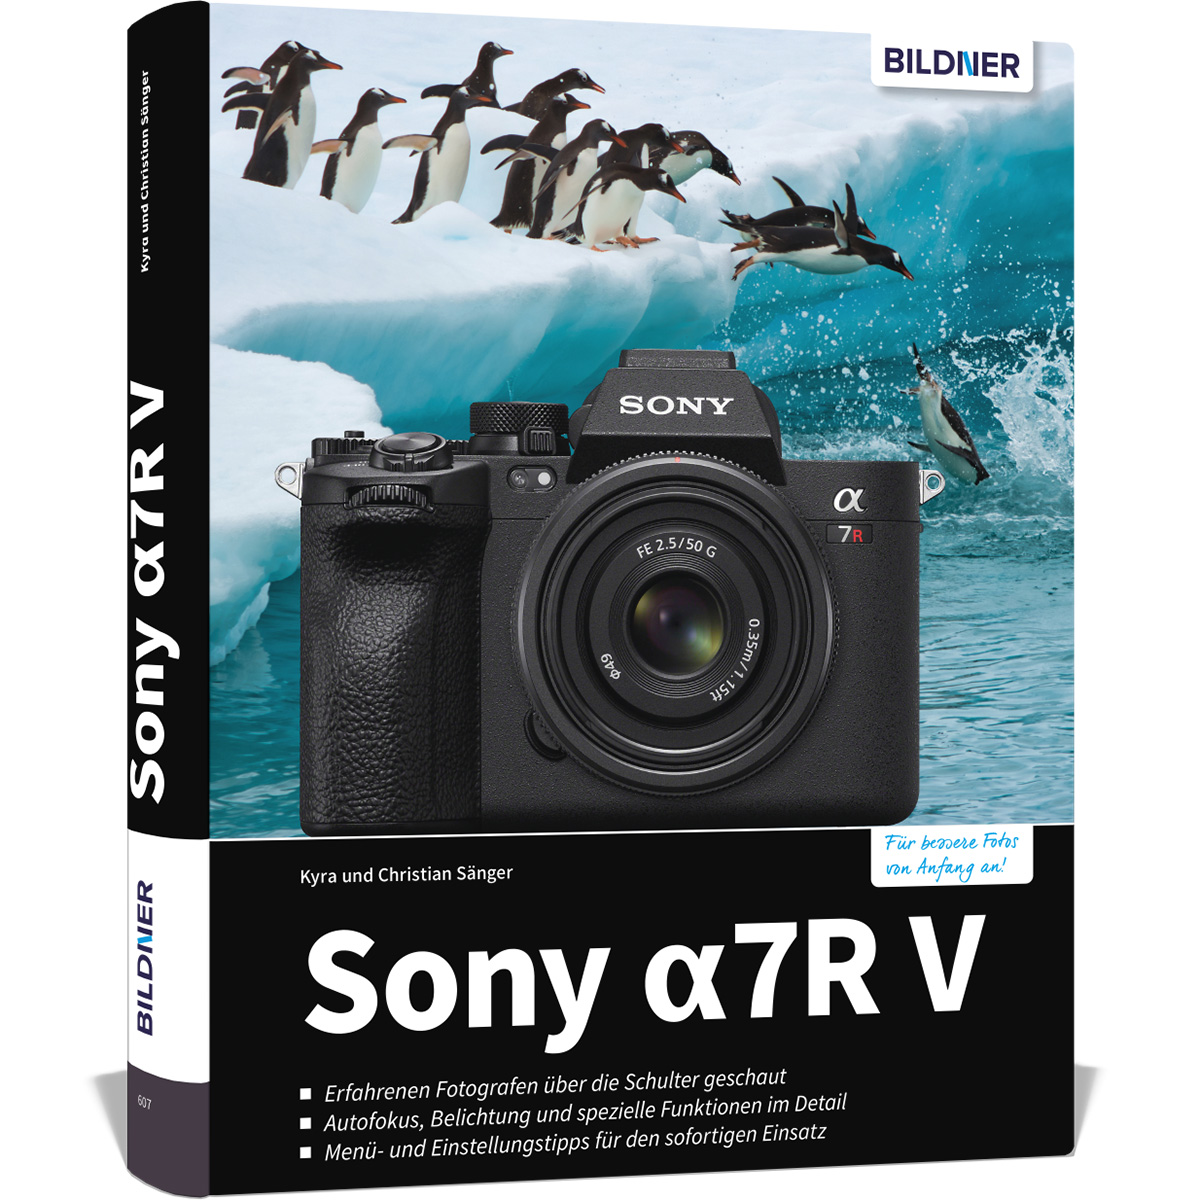 Praxisbuch 7R - zu Ihrer umfangreiche alpha Kamera Das V Sony